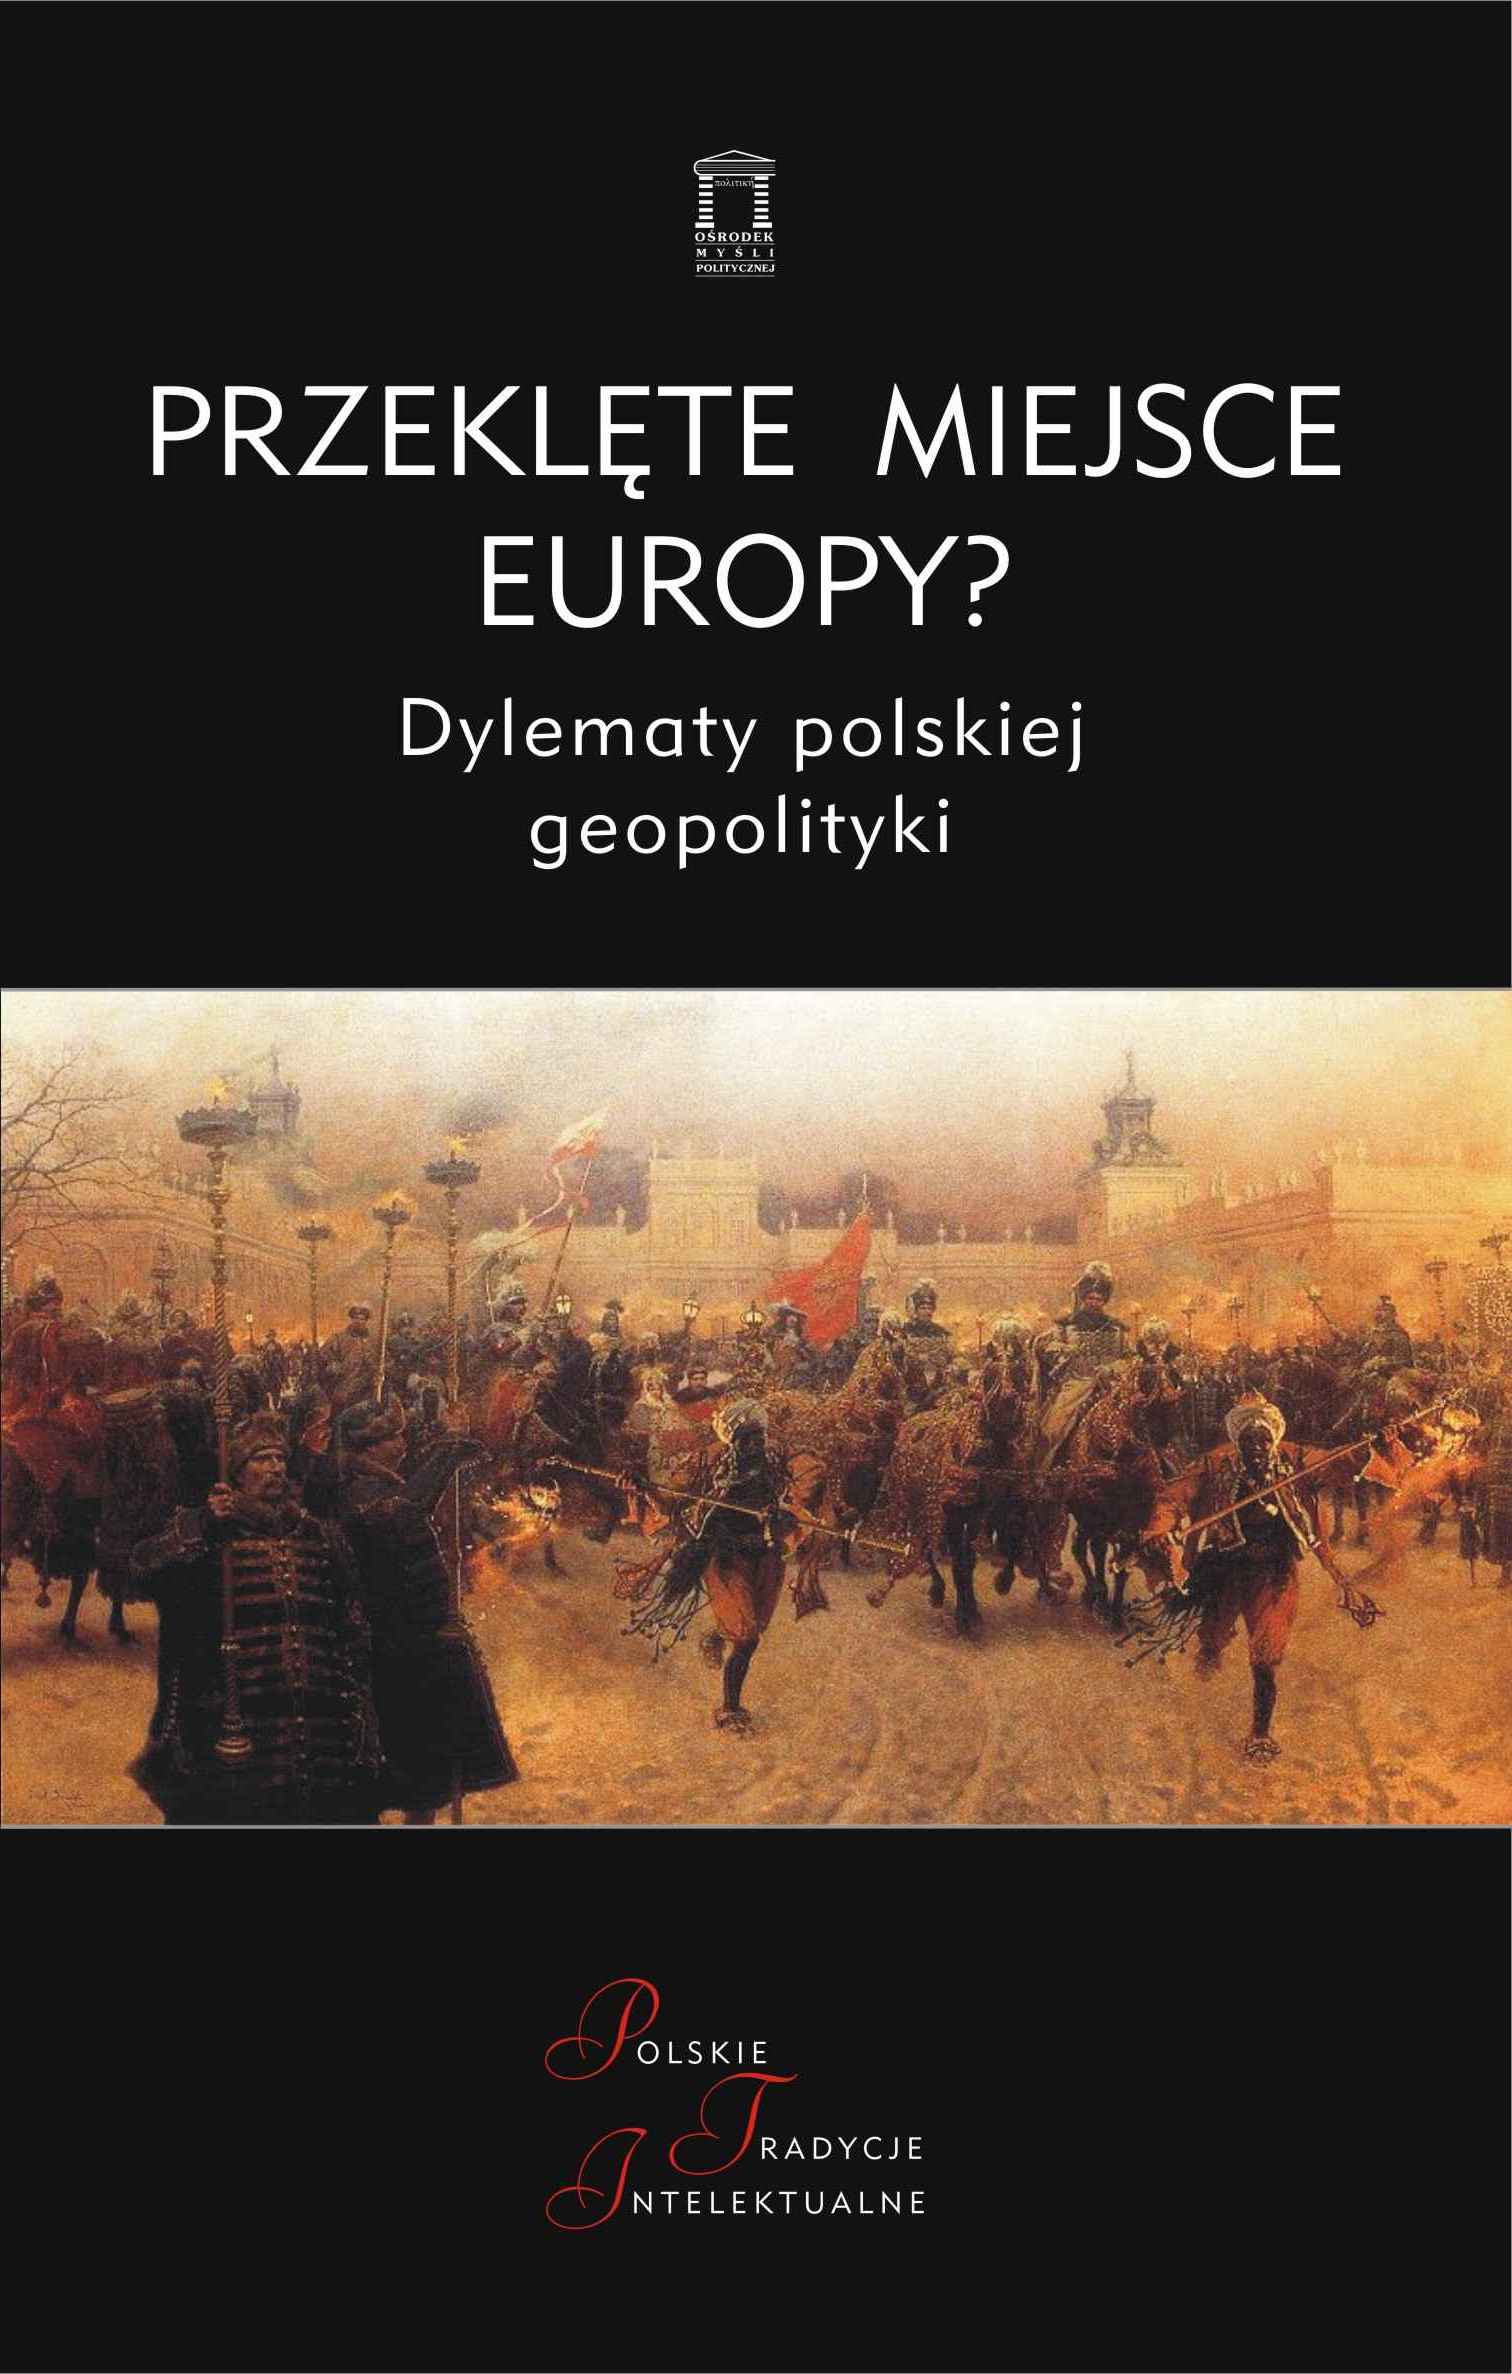 Przeklęte miejsce Europy? Dylematy polskiej geopolityki